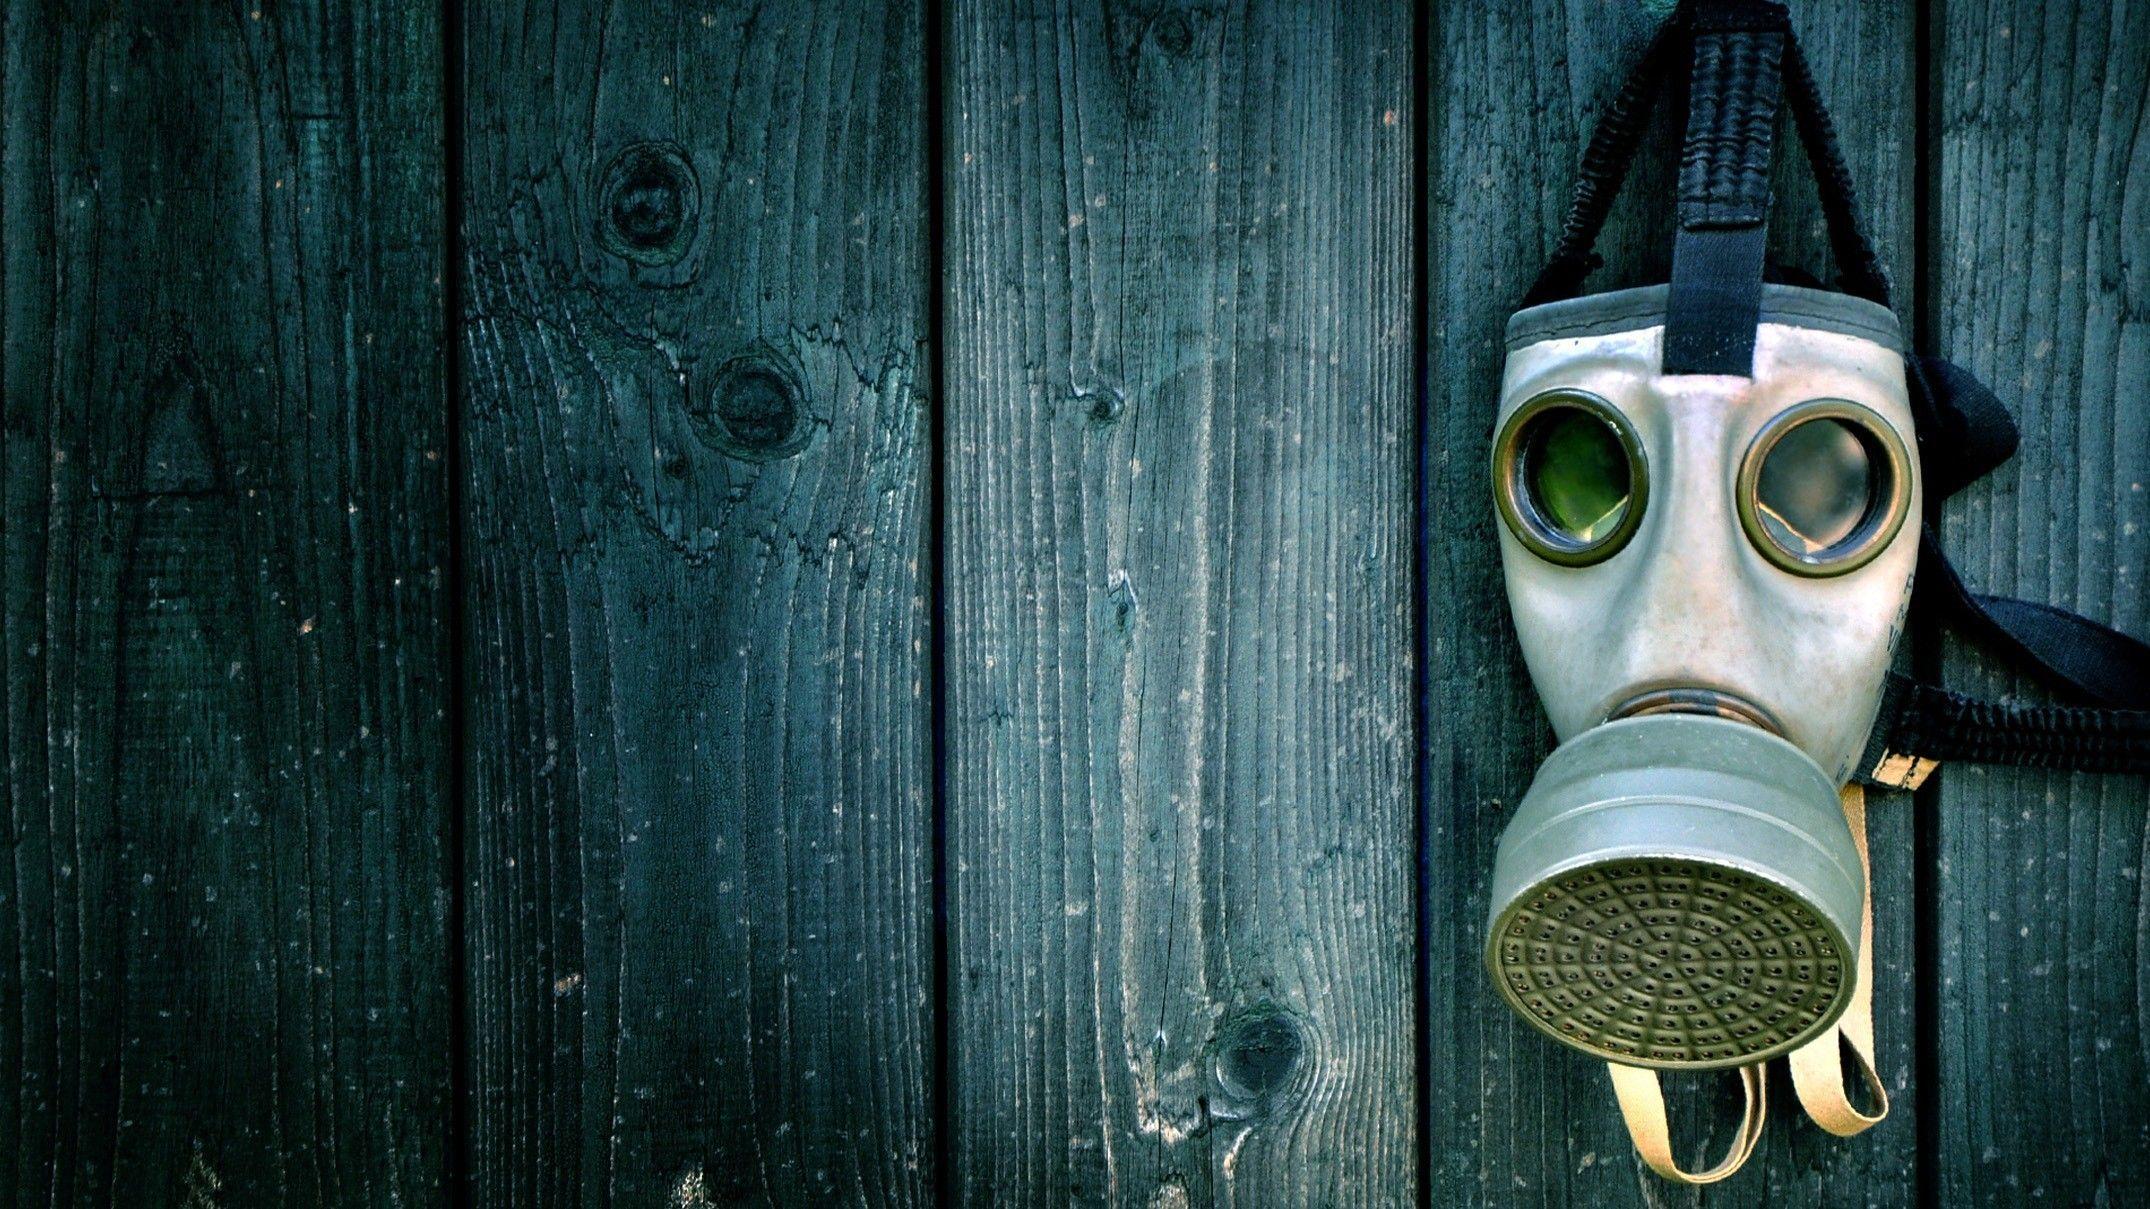 Green blue wood gas masks wallpaper. PC